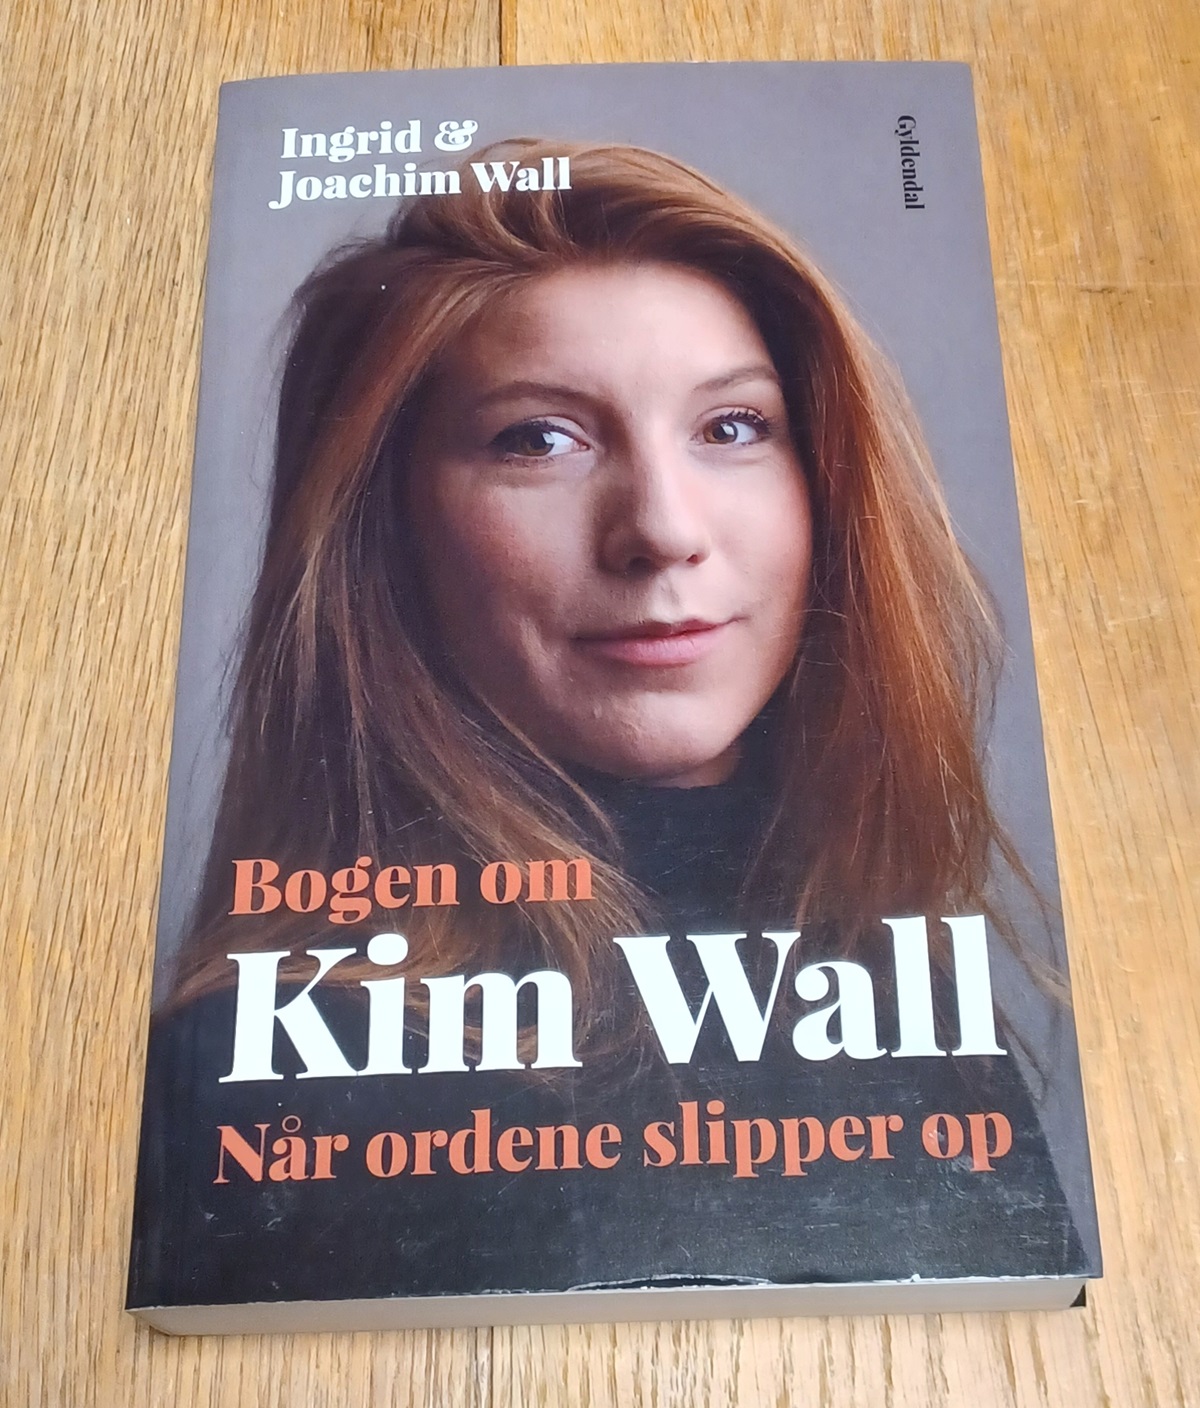 Bogen om Kim Wall